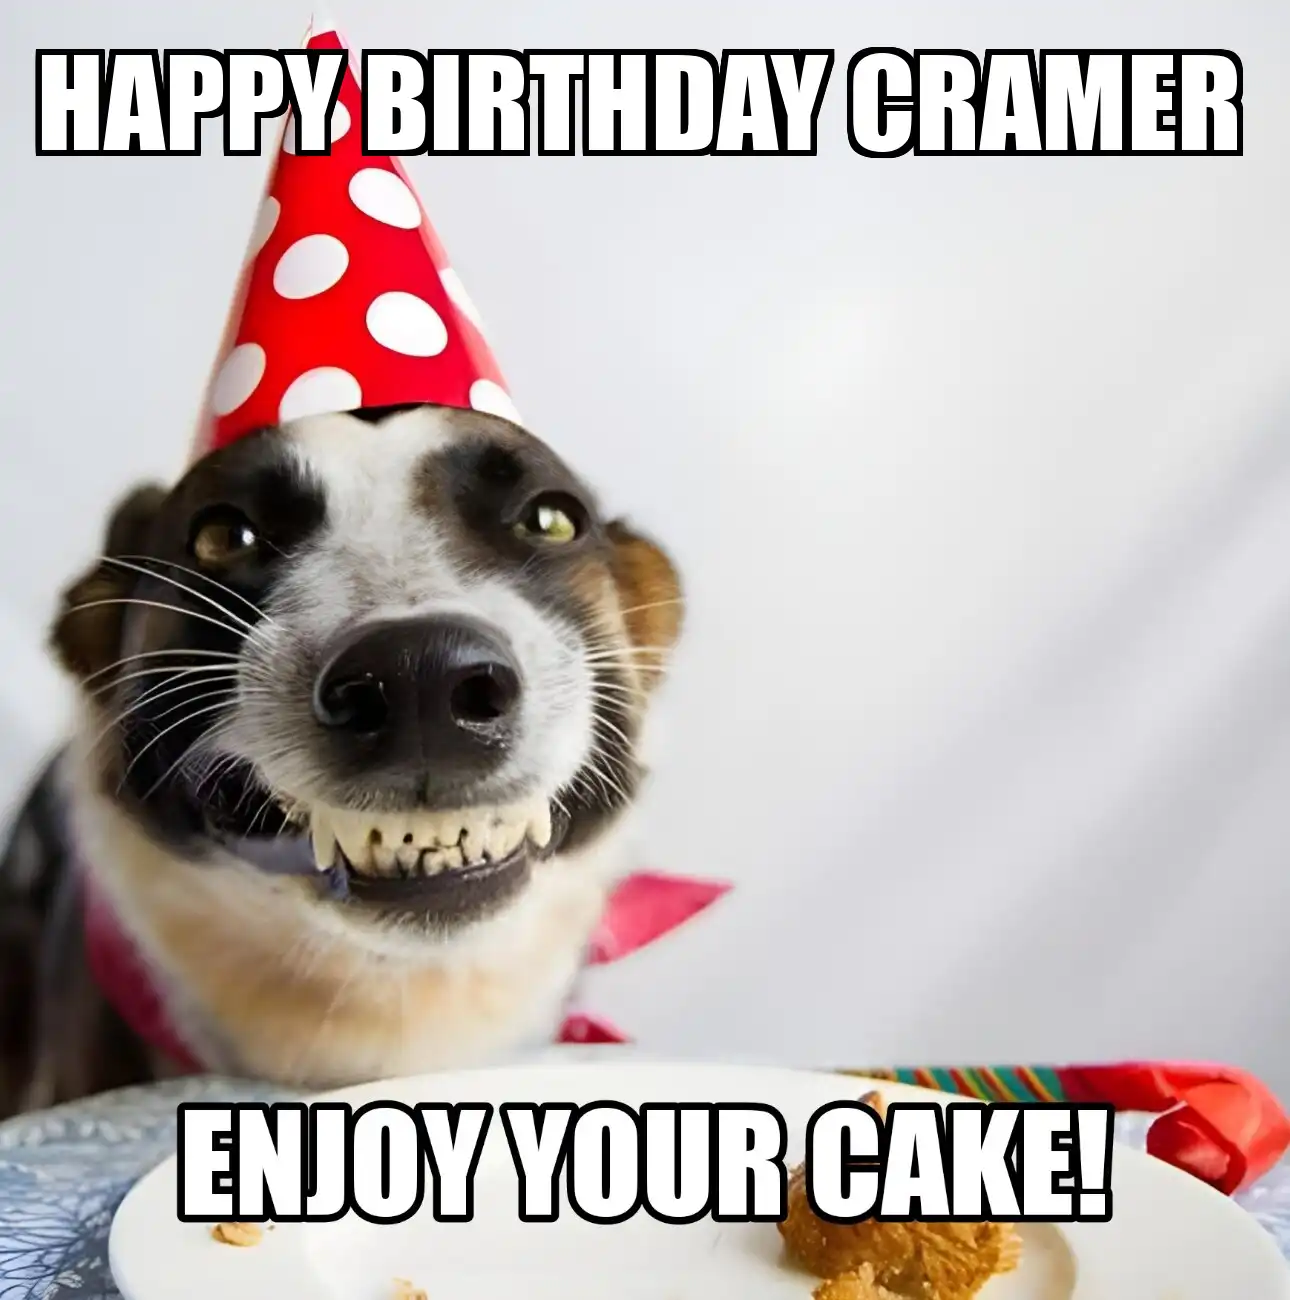 Happy Birthday Cramer Enjoy Your Cake Dog Meme